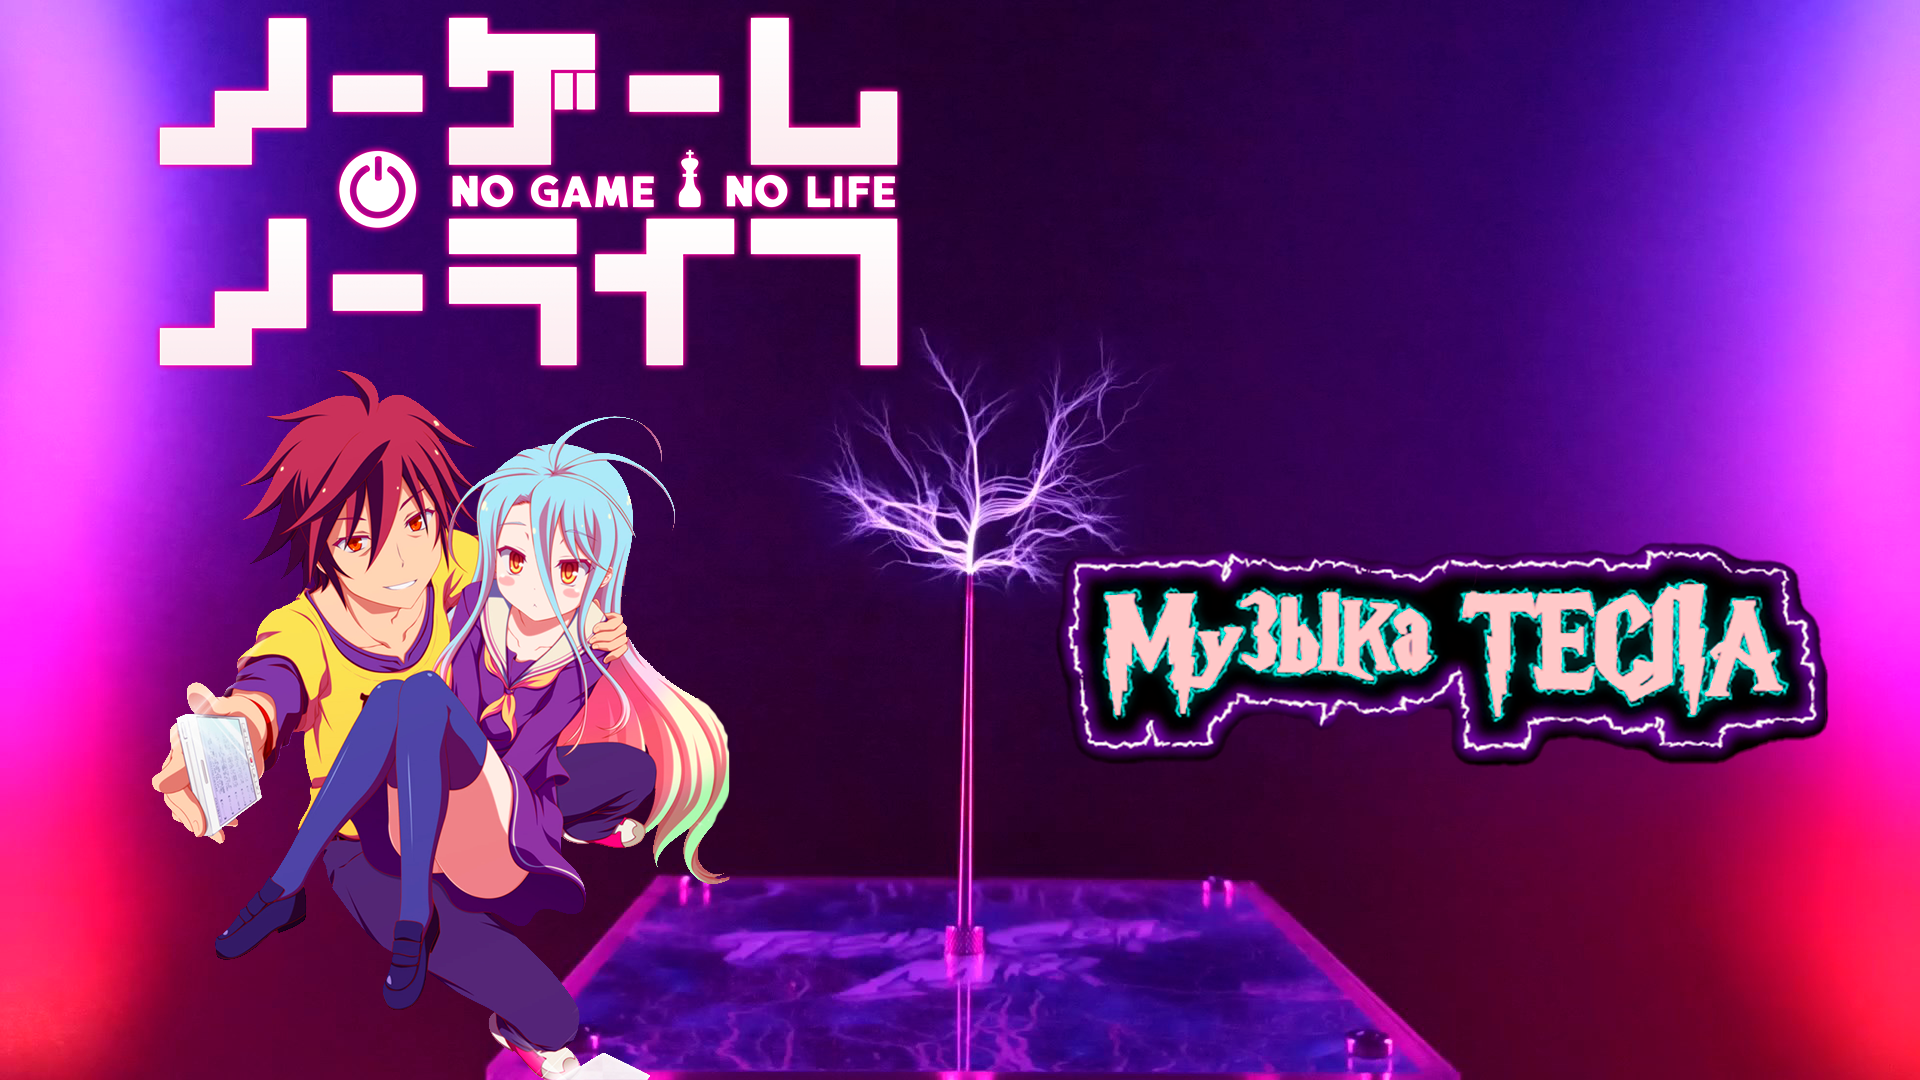 No Game No Life Suzuki Konomi - This Game Tesla Coil Mix #музыкатесла